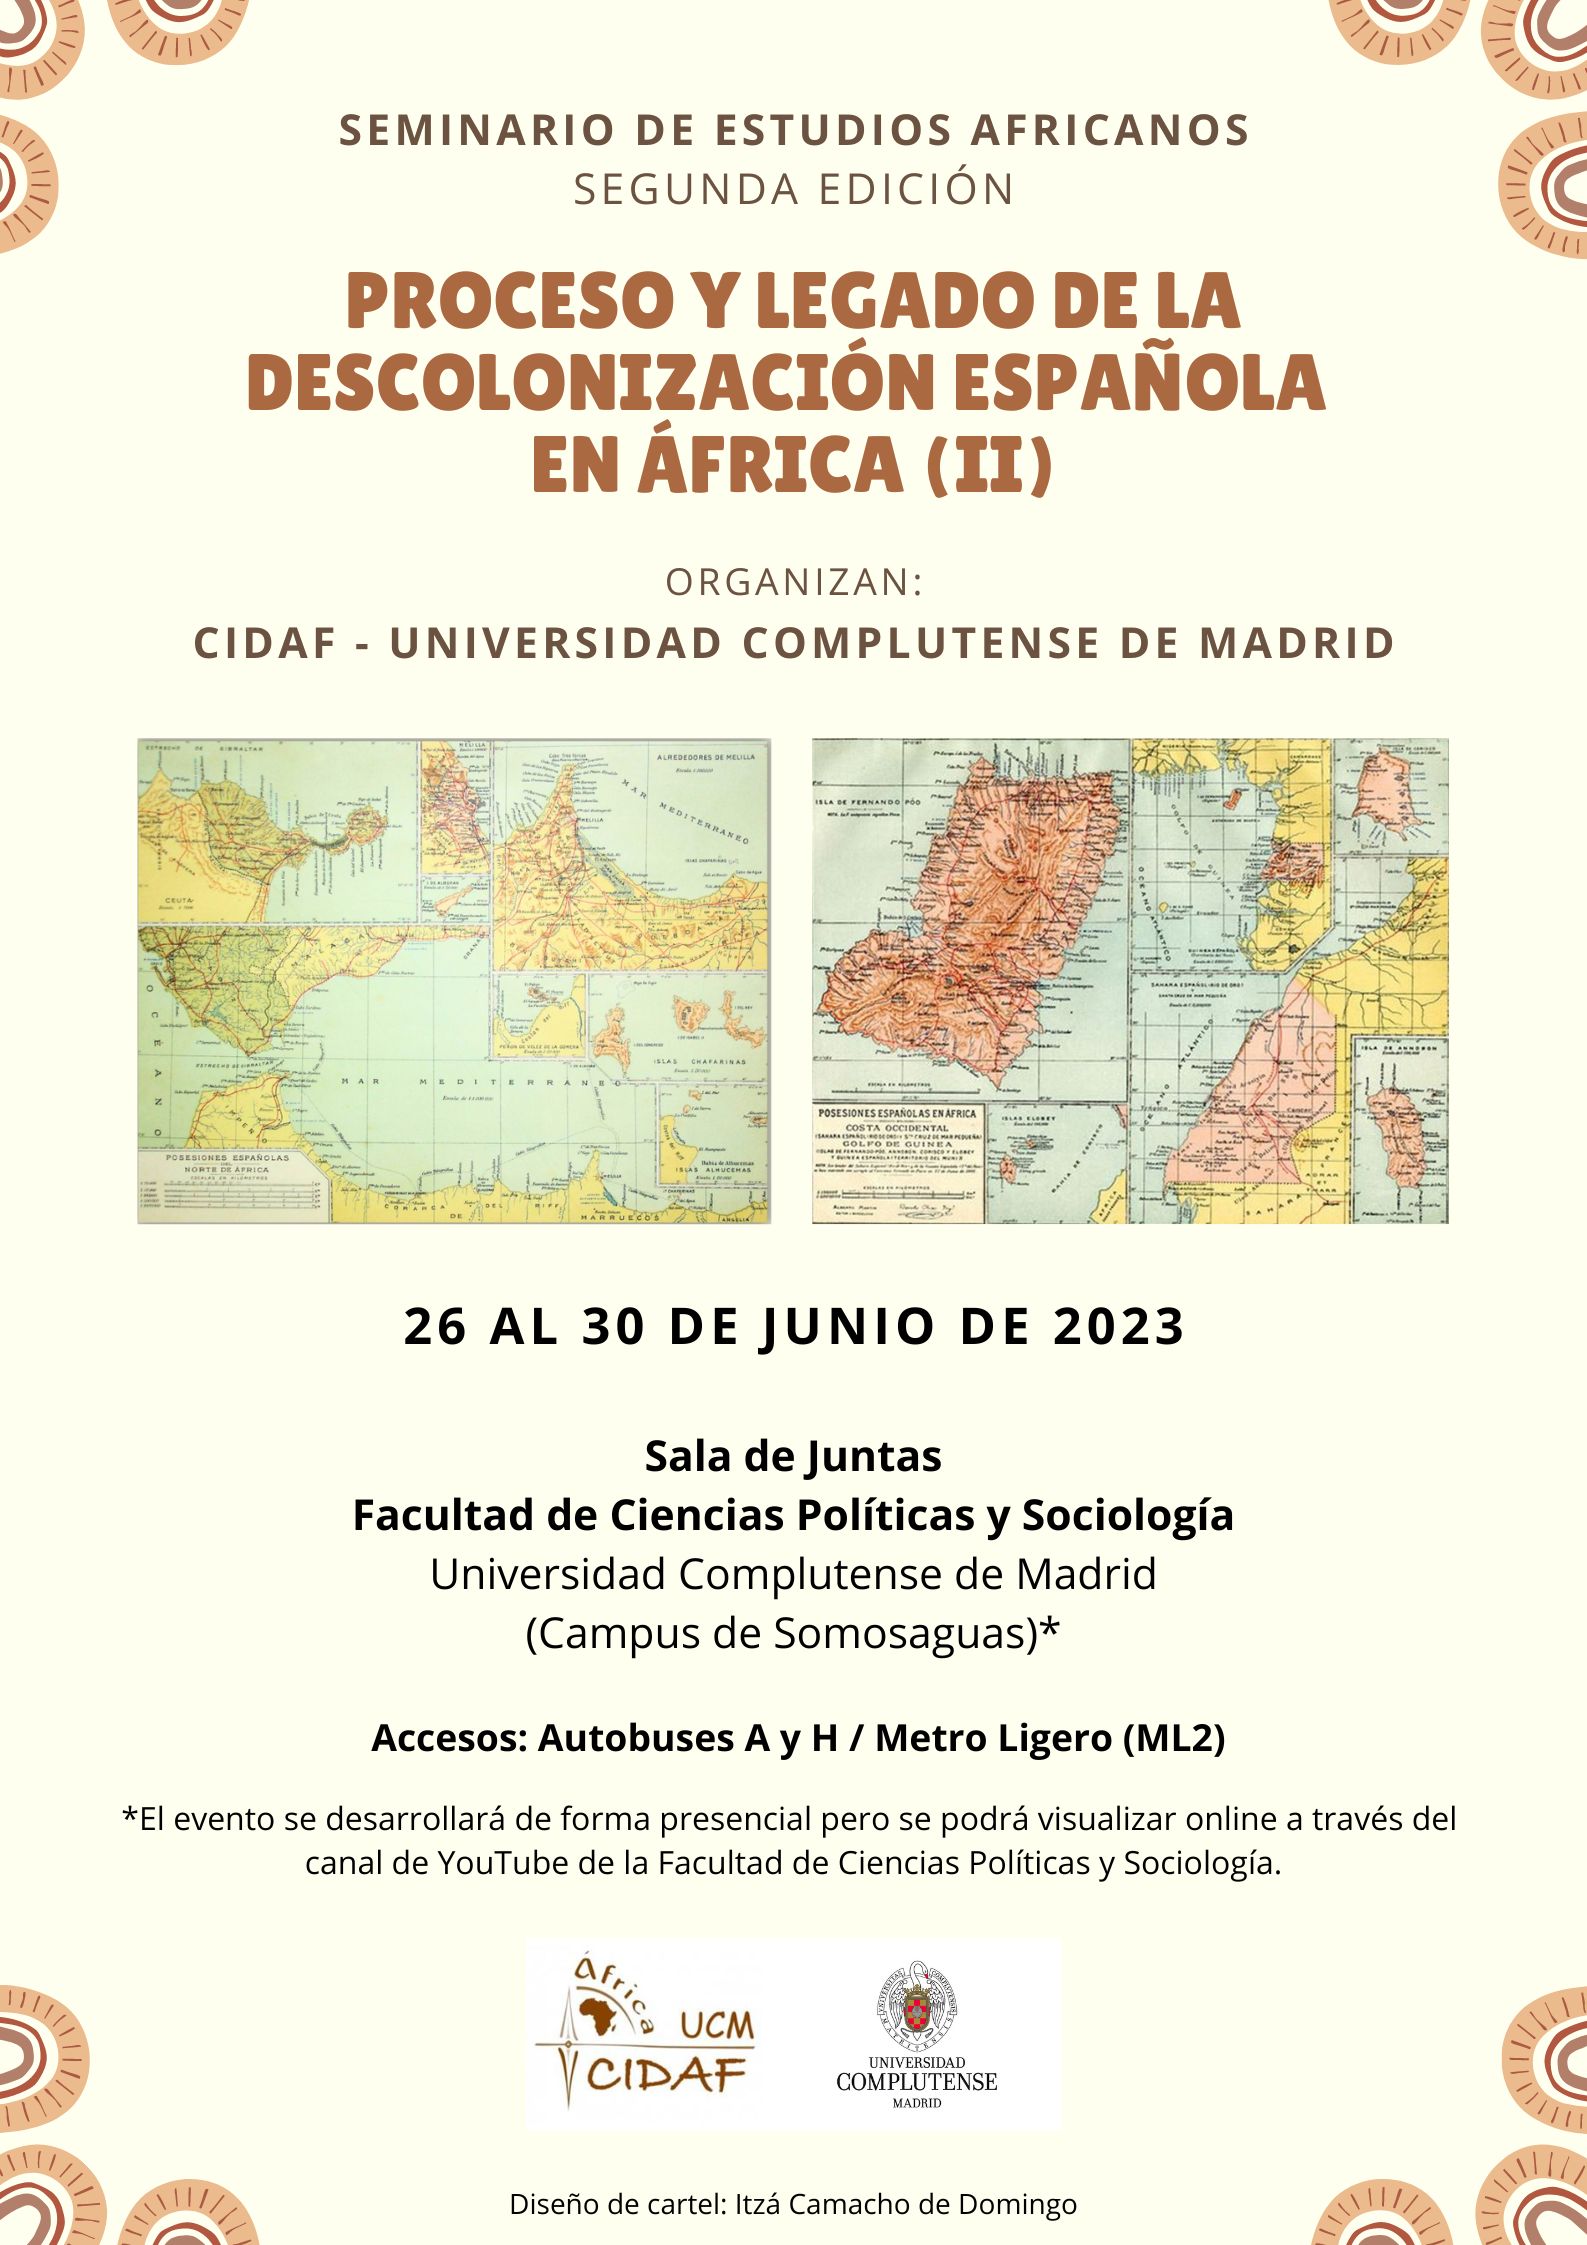 Seminario de Estudios Africanos (II): Proceso y legado de la descolonización española en África (26 – 30 junio 2023. Madrid)